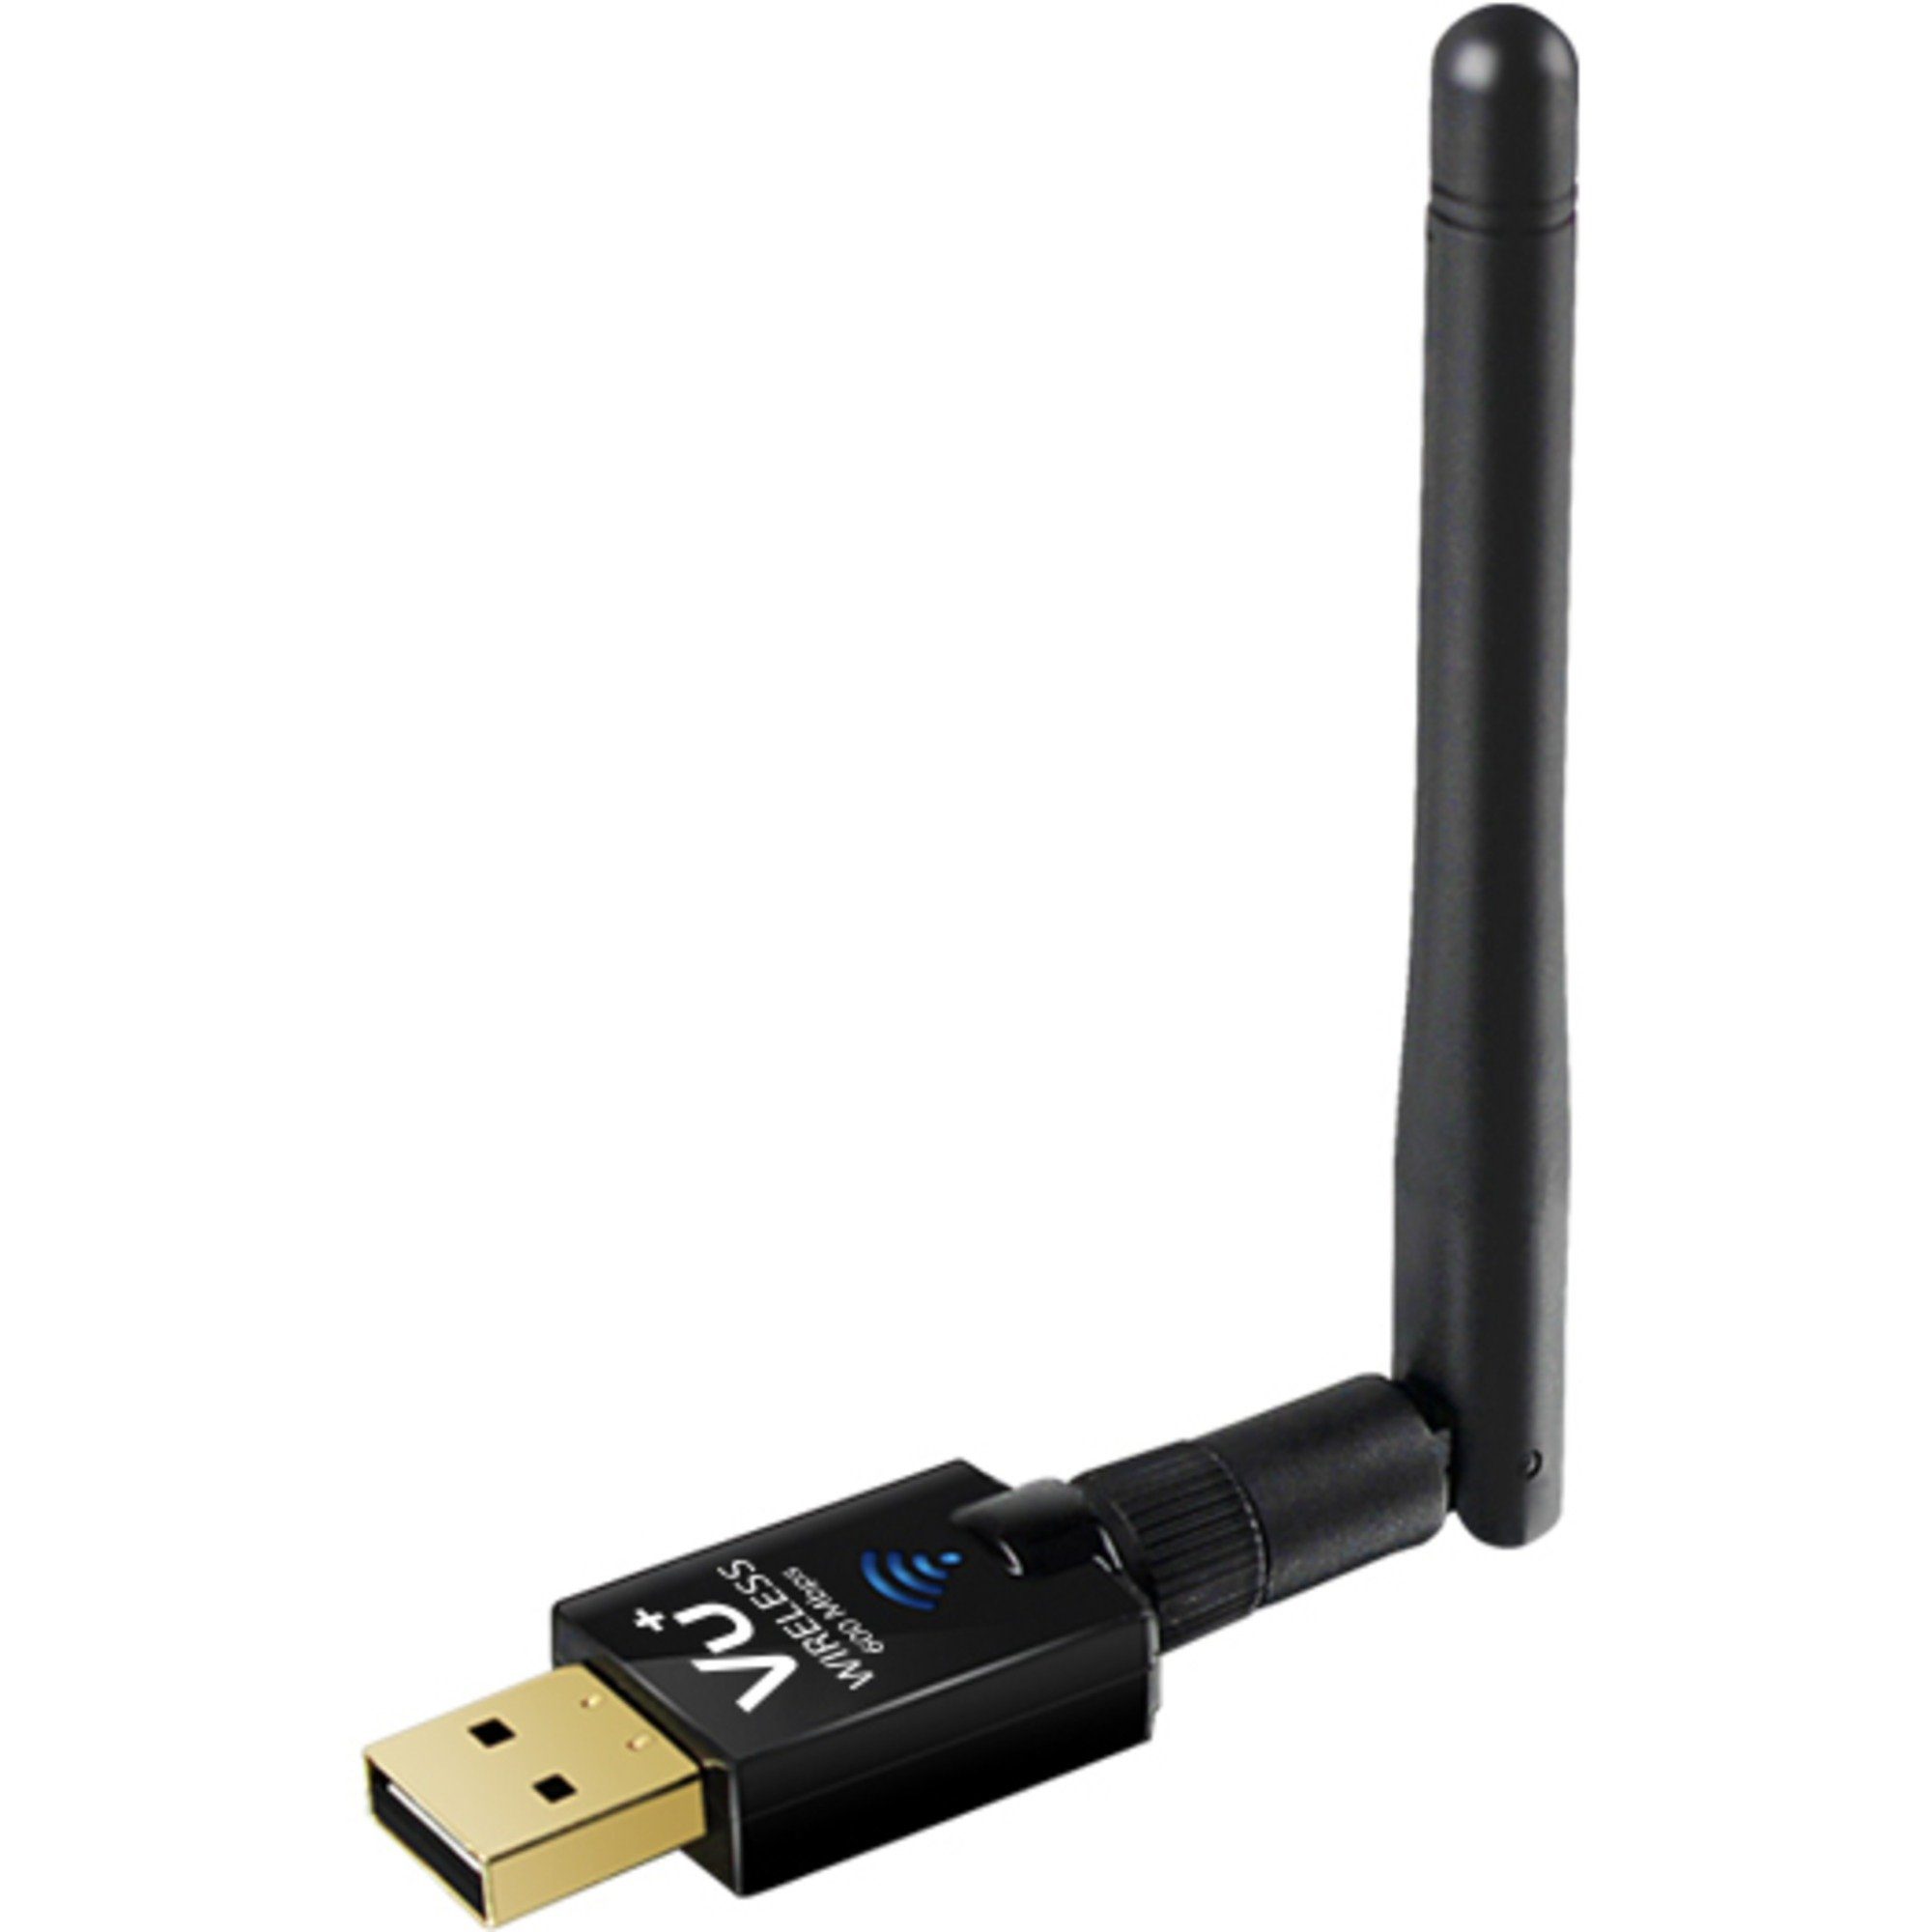 VU+ VU+ USB WLAN-Adapter Adapter, Wireless 600 Netzwerk-Adapter Mbps